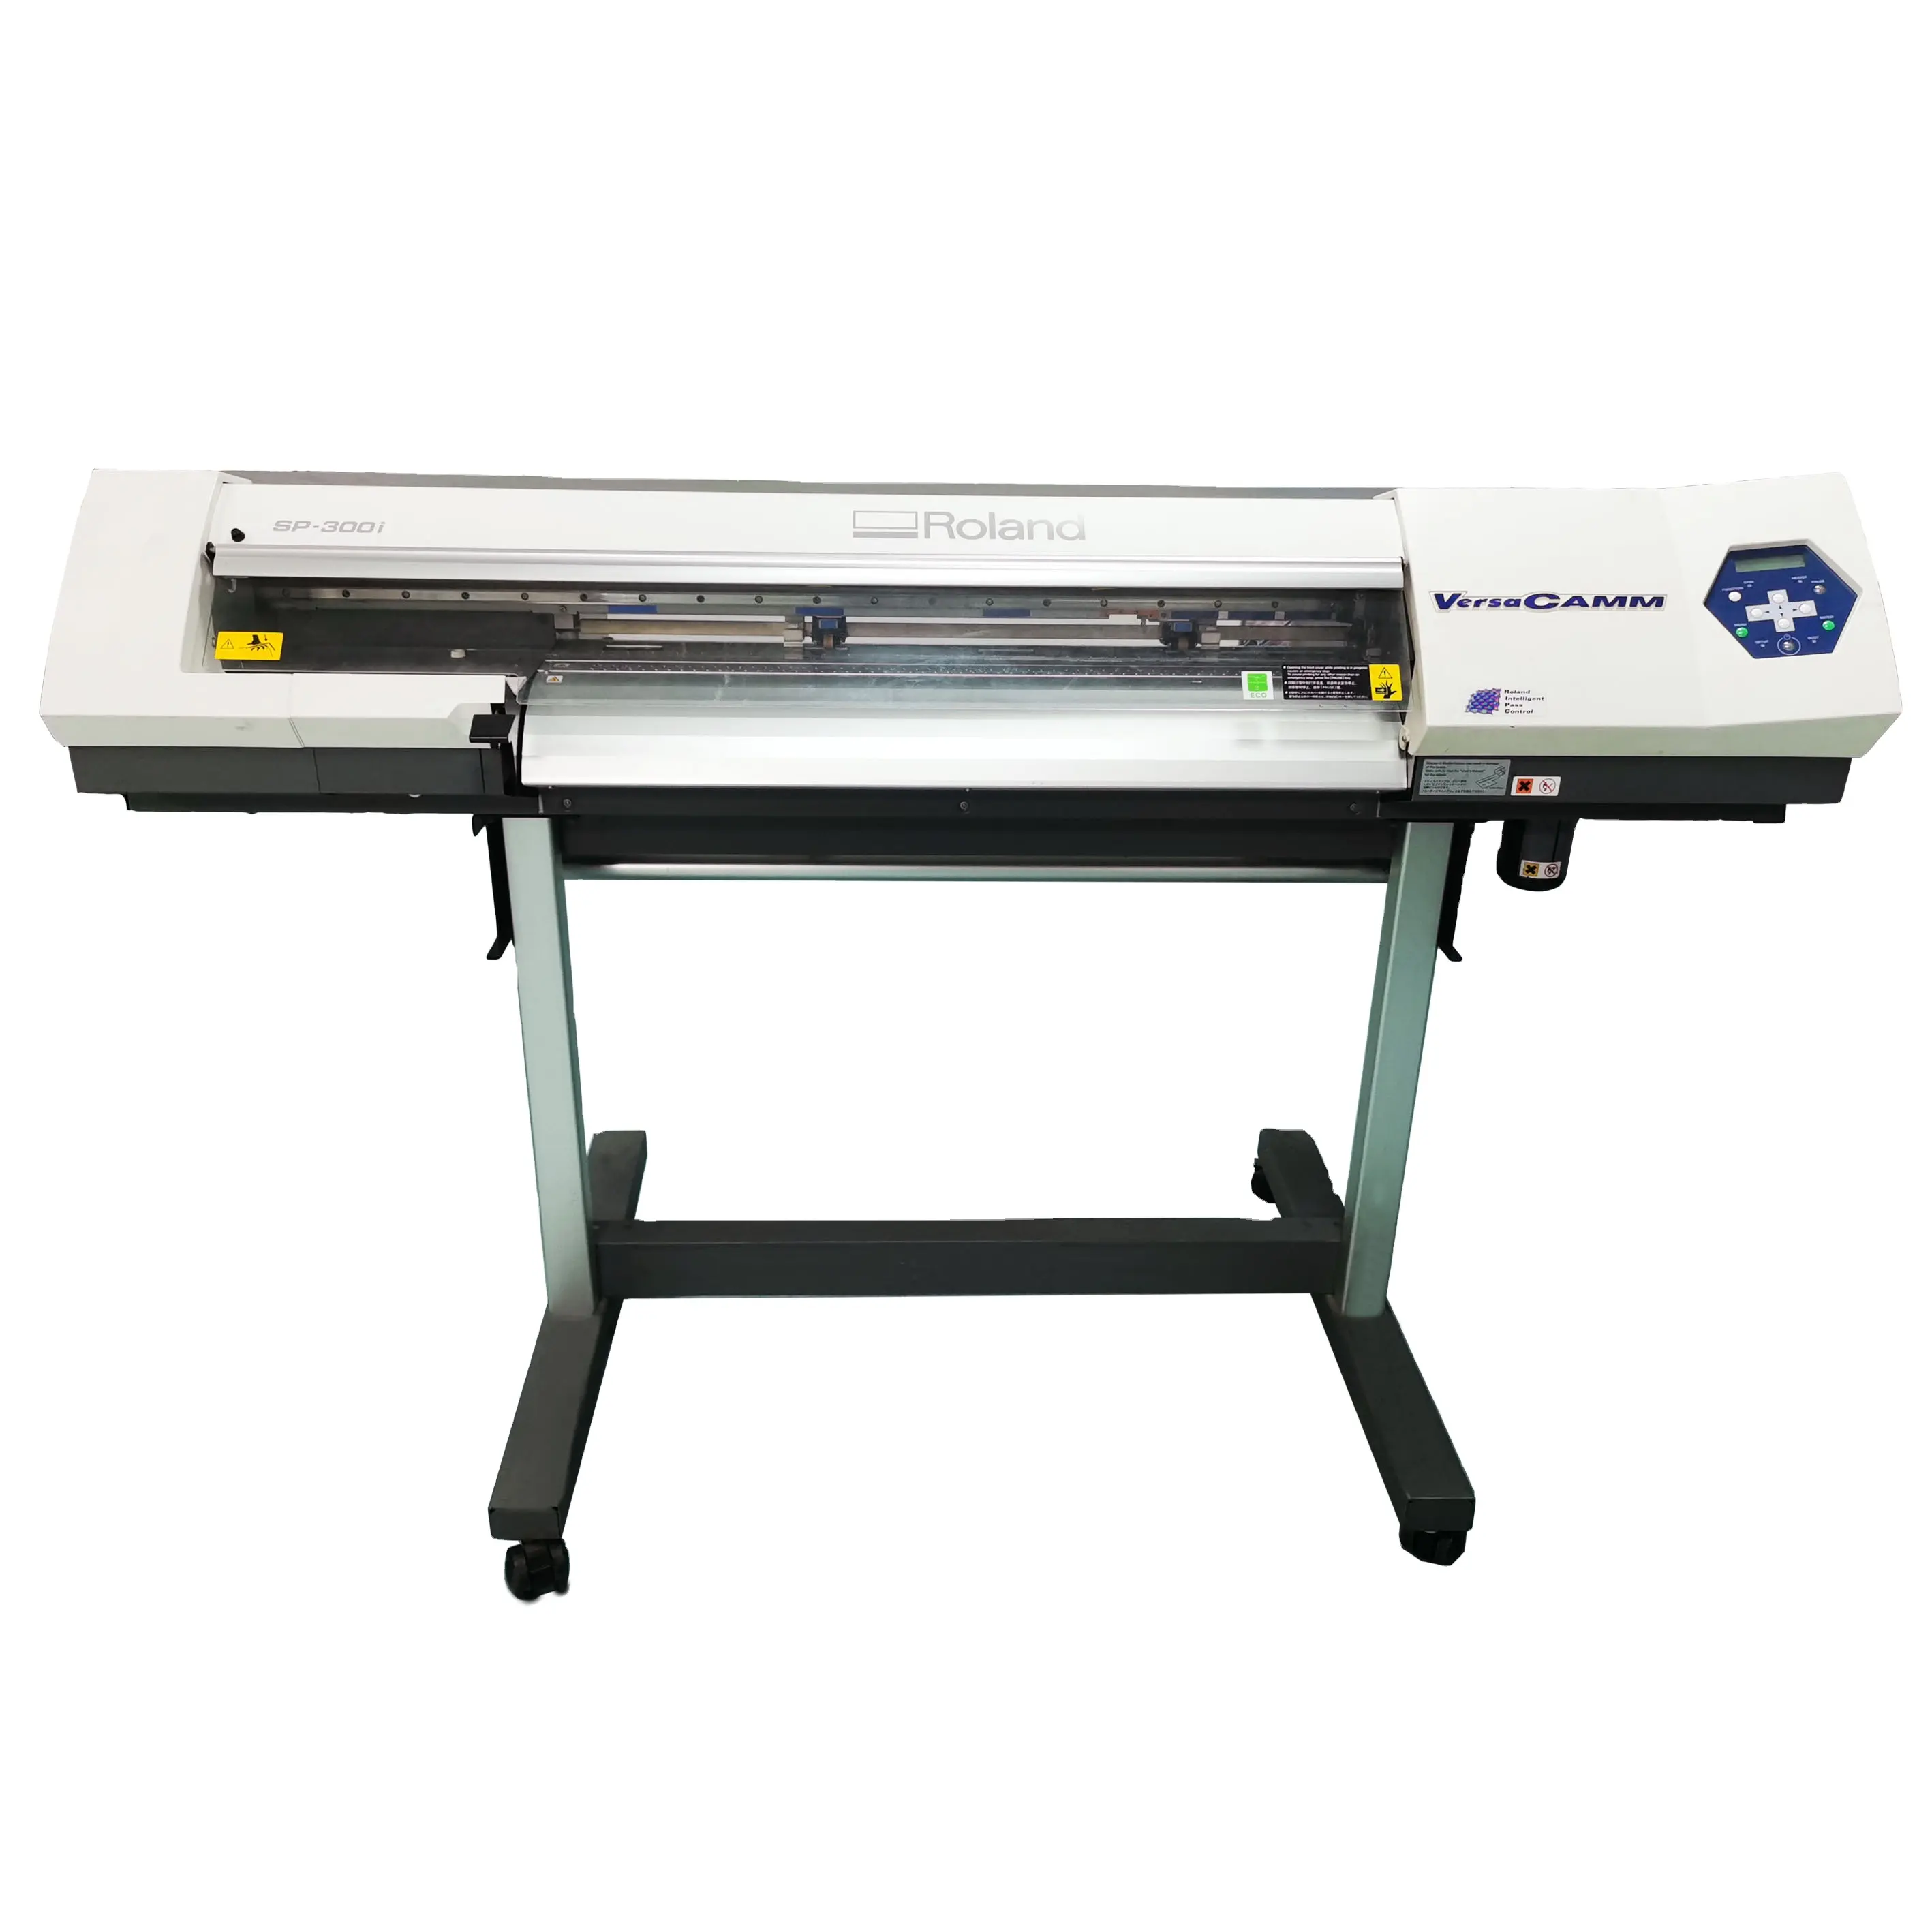 Sp300i impressão & corte eco solvente subolmação camiseta impressora roland impressora